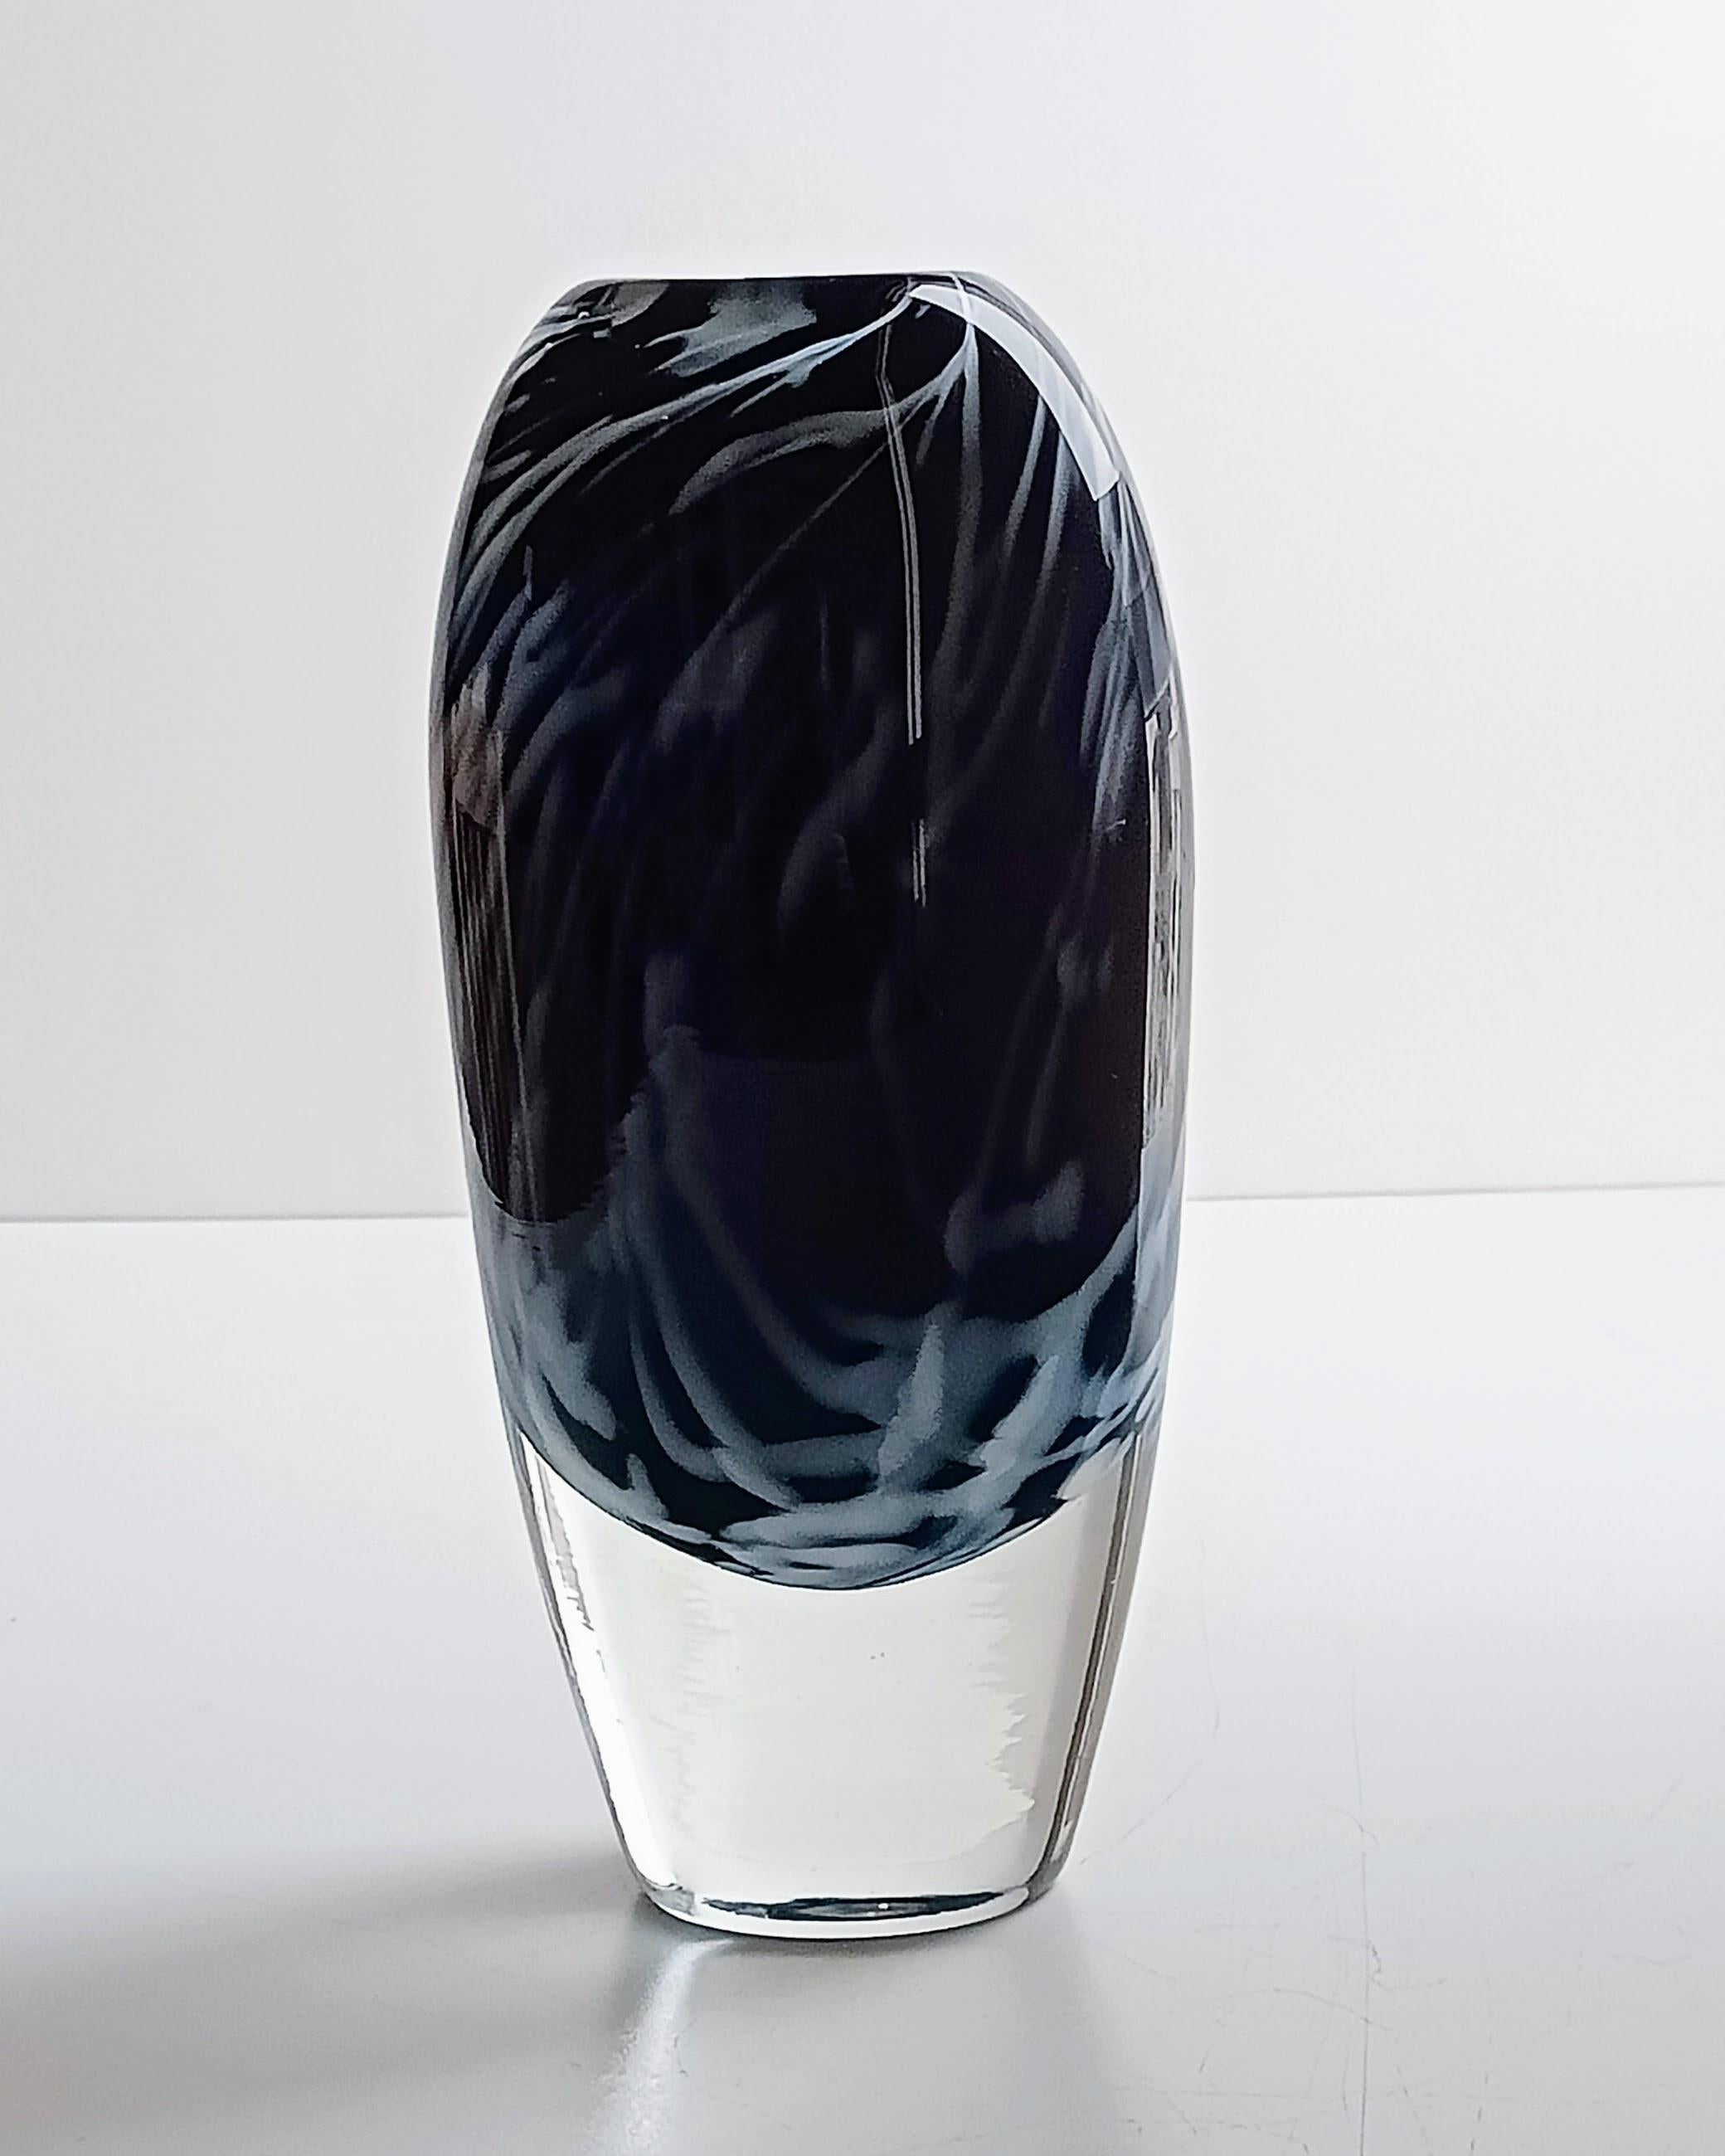 Le verre d'art Modern Scandinavian Modern d'Orrefors, conçu par Walter Johansson et datant du milieu du siècle dernier, représente certains des plus beaux exemples de l'art du verre de cette époque. Orrefors, verrerie suédoise de renom, est depuis